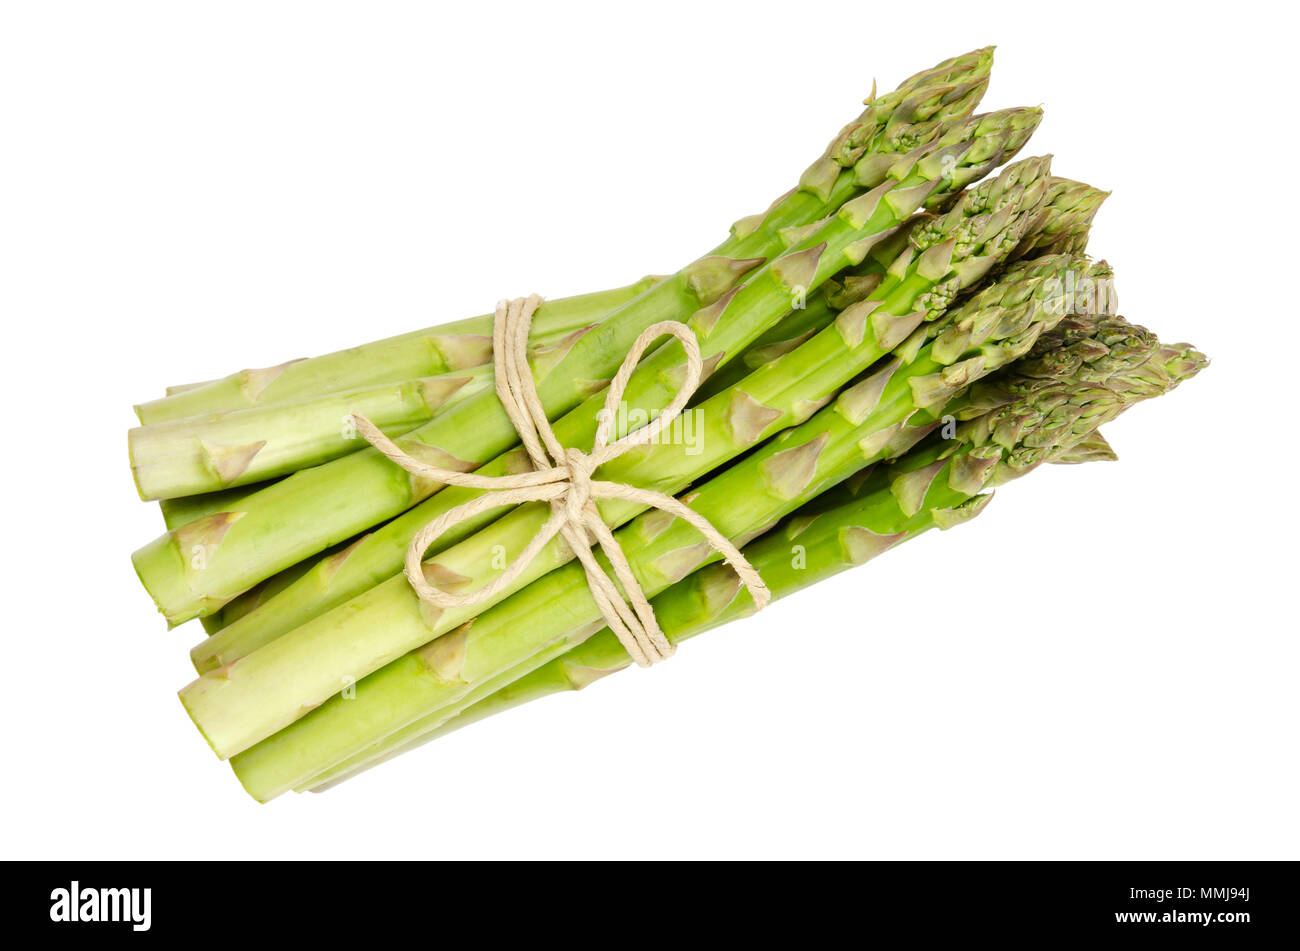 Bündel von frischem grünen Spargel schießt, auch Spatz Gras. Kultiviert Asparagus officinalis. Frühling Gemüse mit dicken Stielen und geschlossenen Knospen. Stockfoto